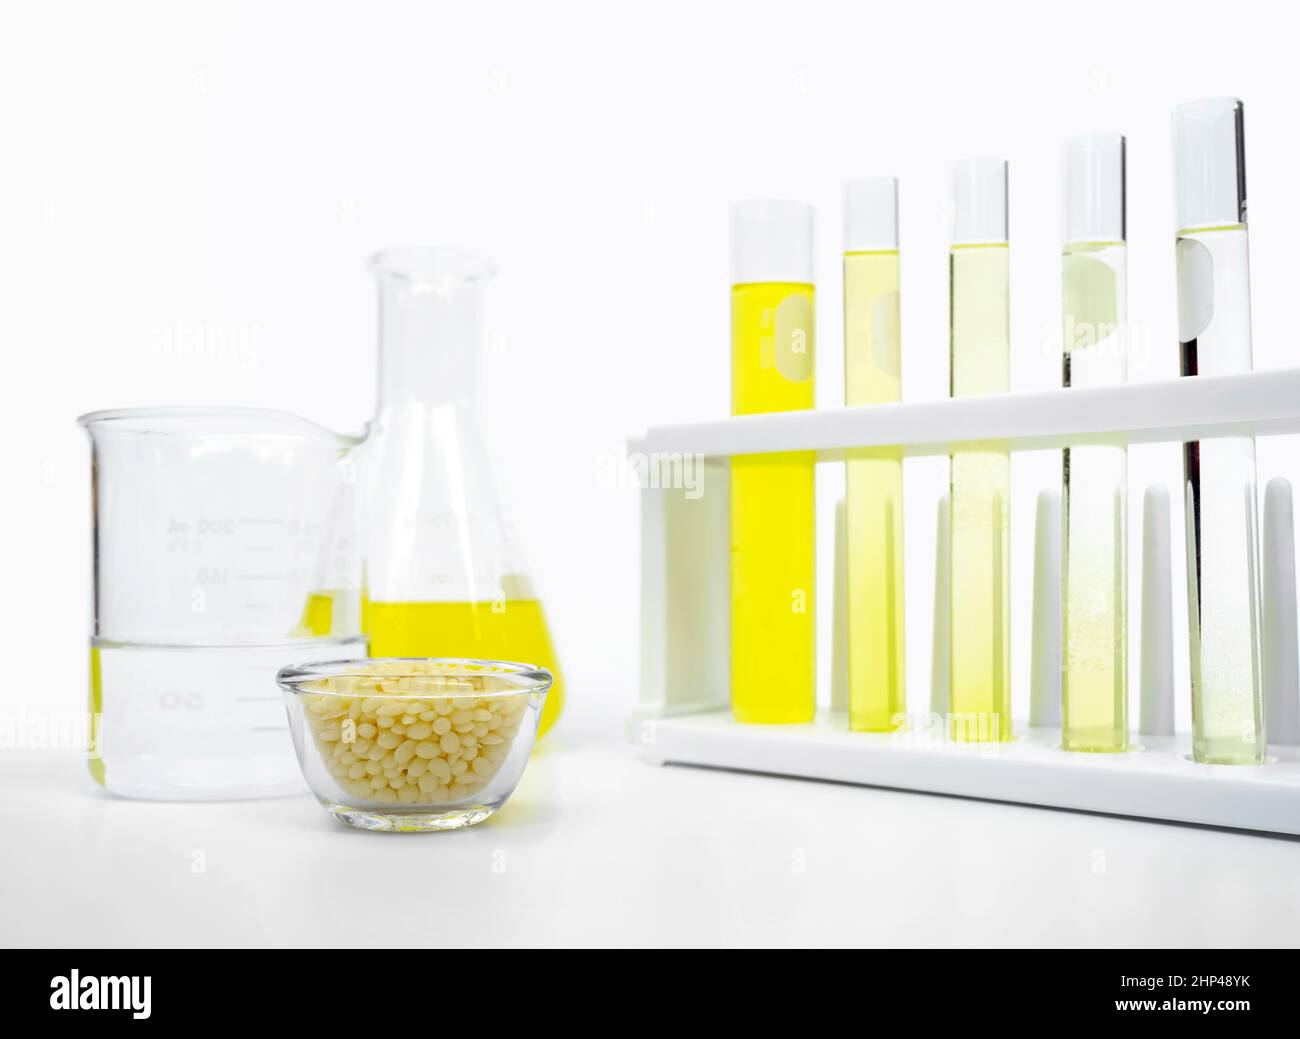 Candelilla-Wachs im Glasbehälter und gelbe kosmetische Farbe (Öl) im erlenmeyerkolben neben Reagenzglasständer und Becher platzieren. Stockfoto